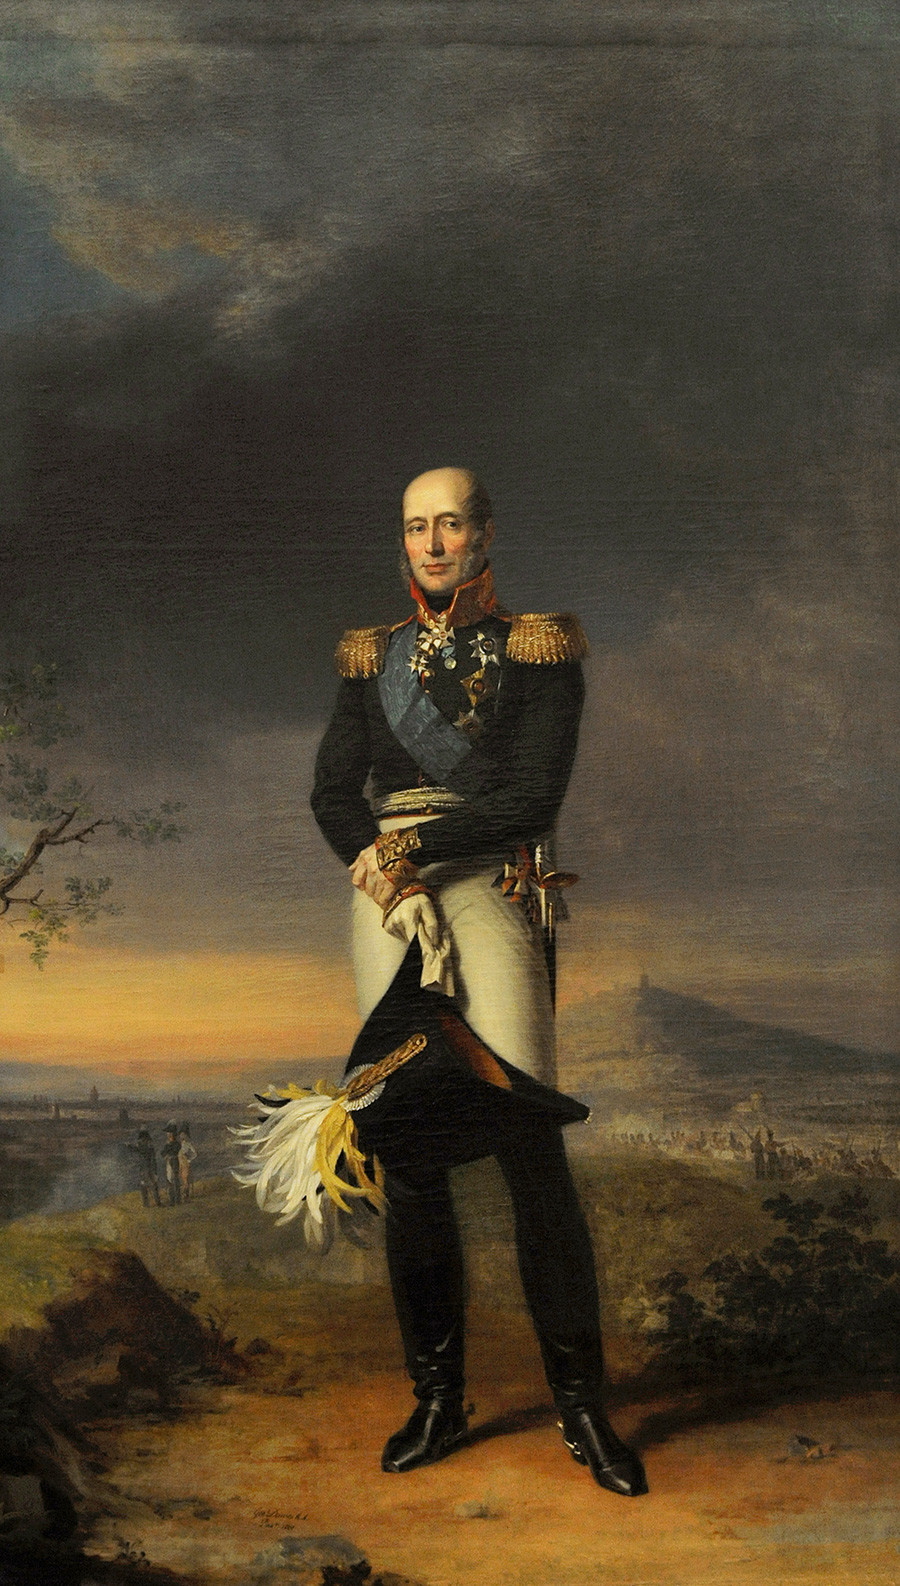 Mikhail B. Barclay de Tolly (1761-1818), feldmaresciallo russo e ministro della Guerra. Ritratto di George Dawe (1781-1829), 1829. Museo Statale dell'Ermitage, San Pietroburgo